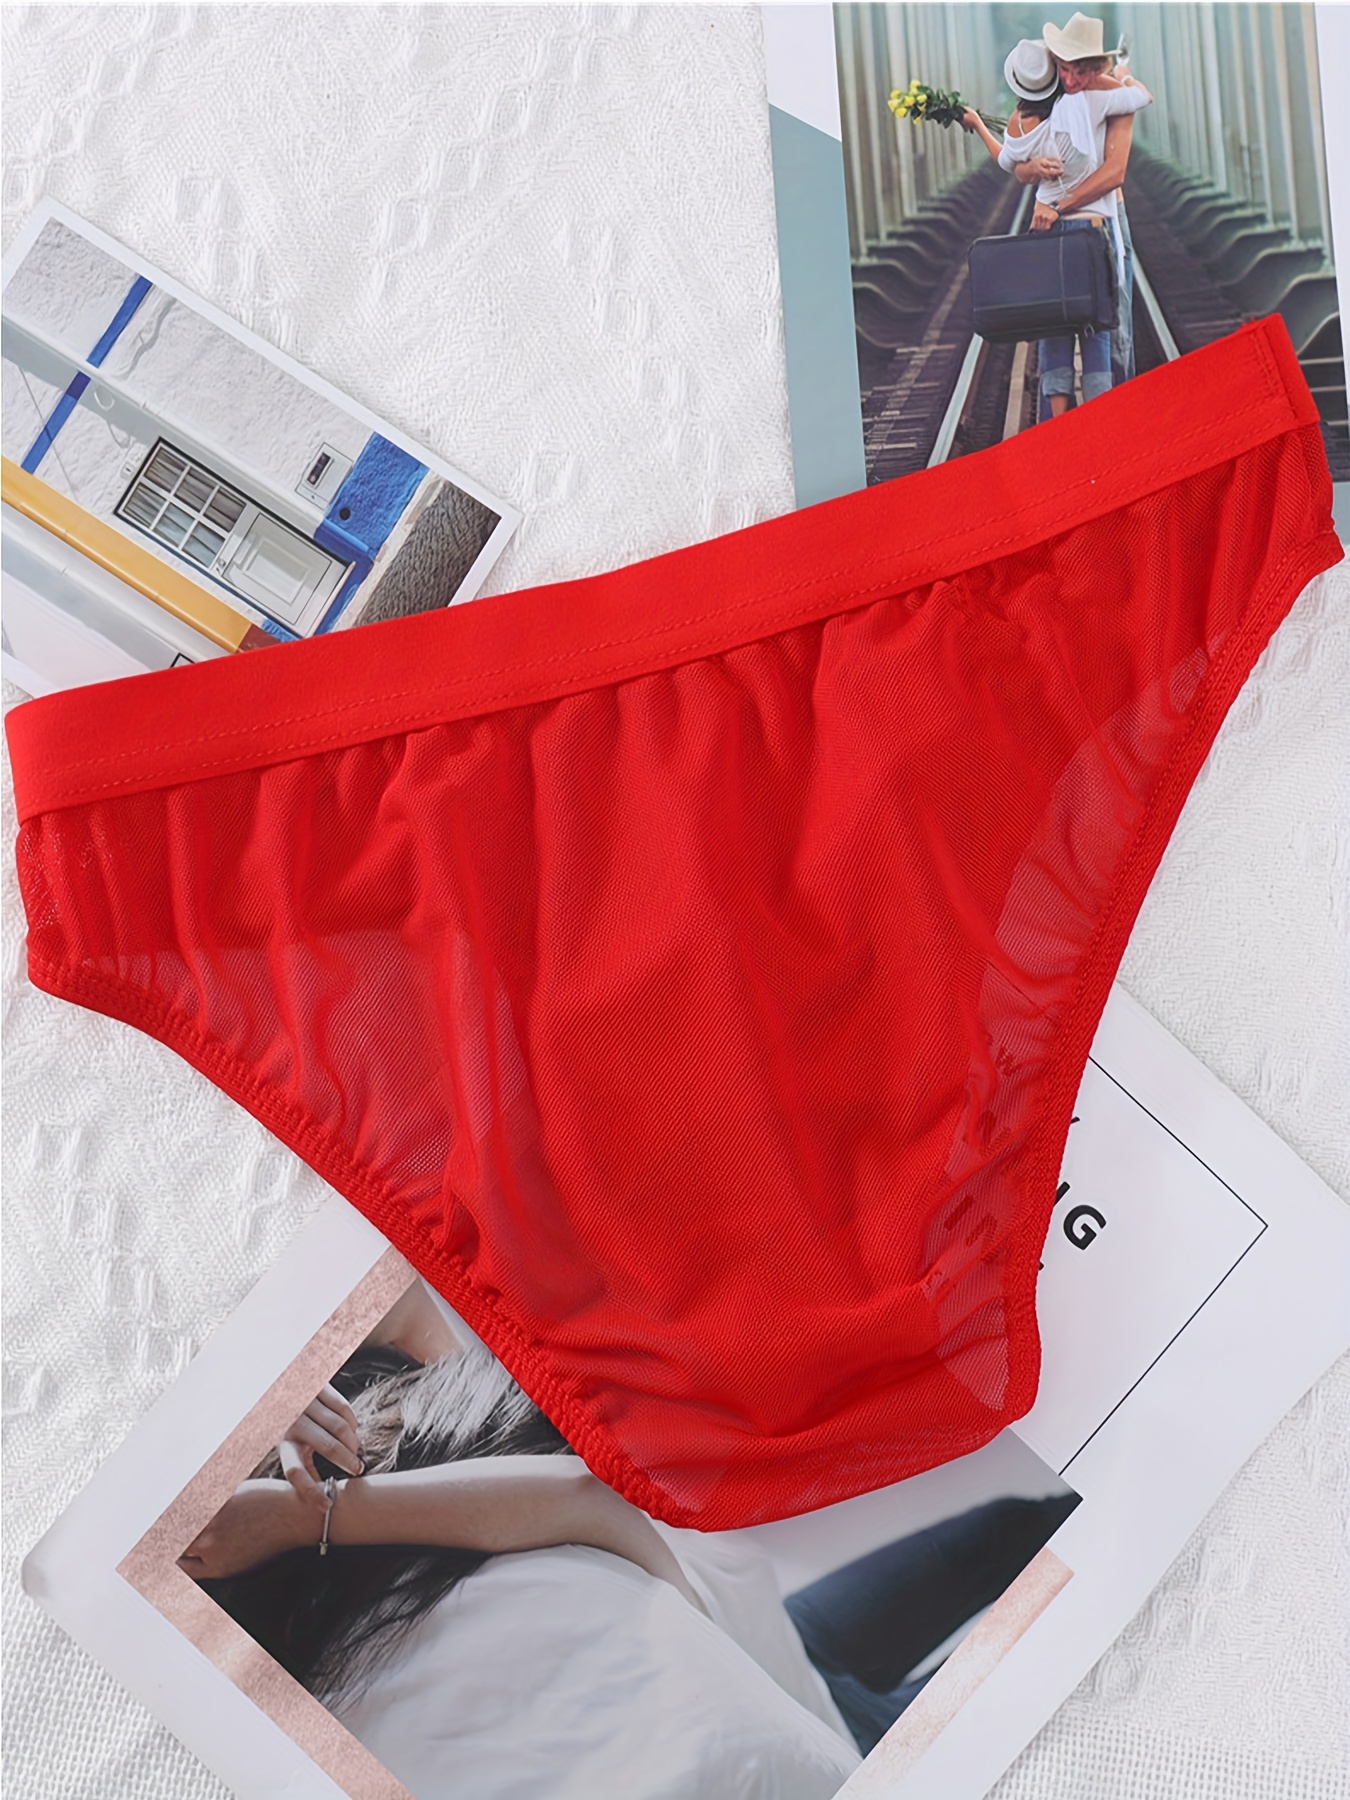 Men's Underwear Semi-transparent Briefs Mens Mesh Breathable Underpants